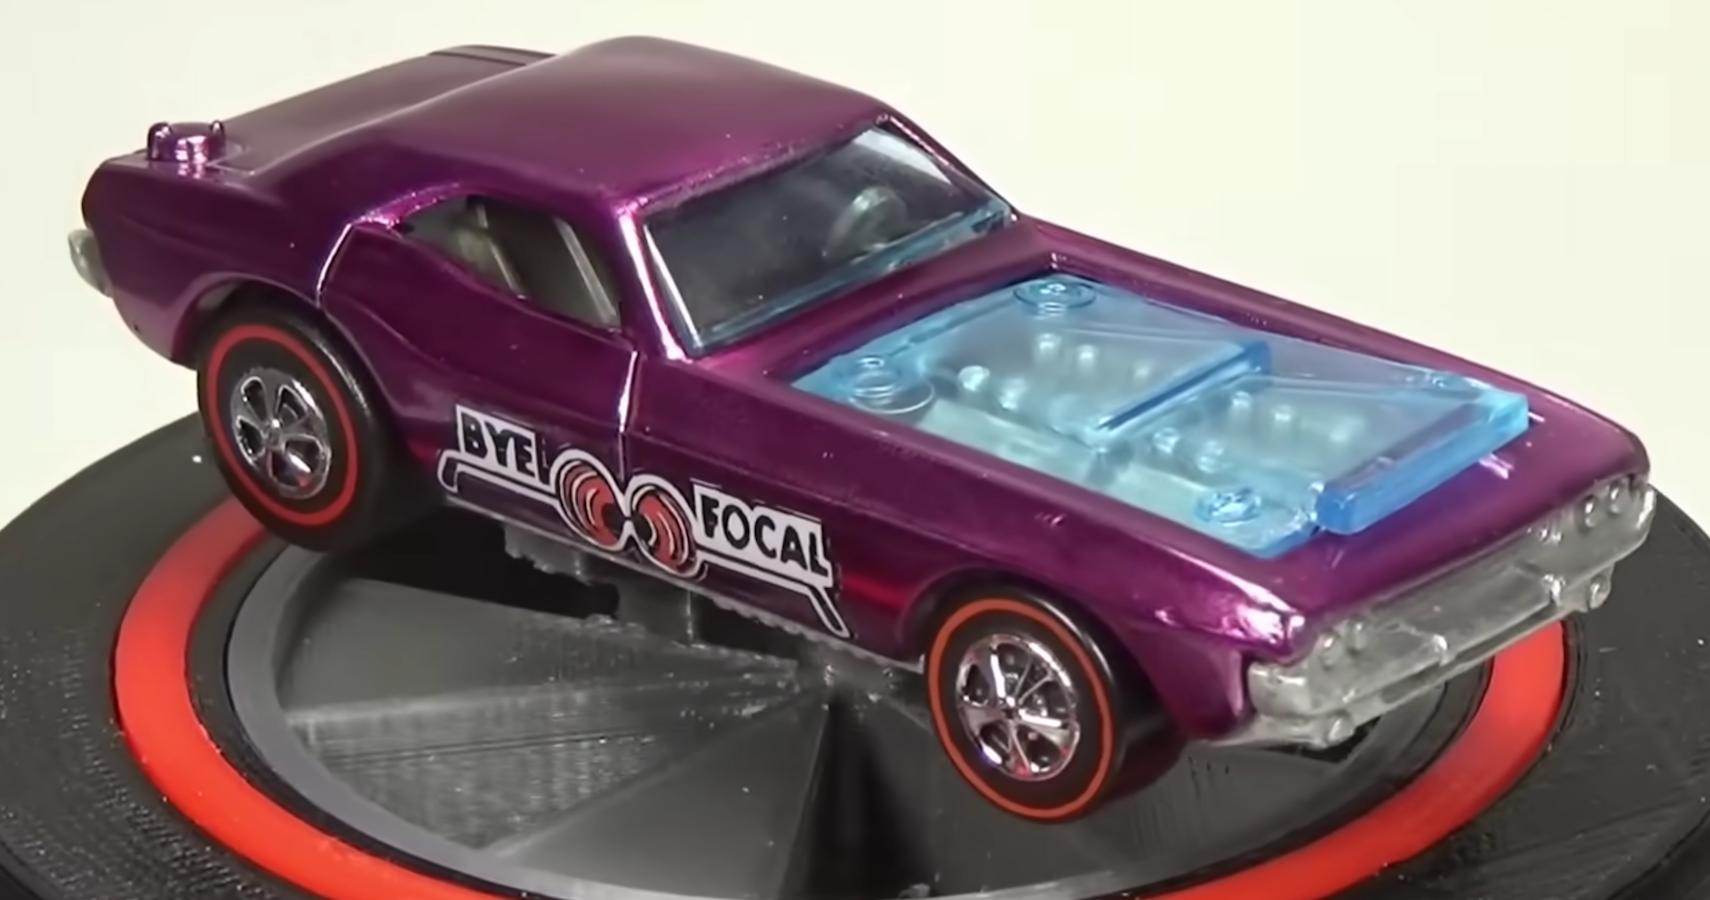 Purple Bye-Focals Toy Car